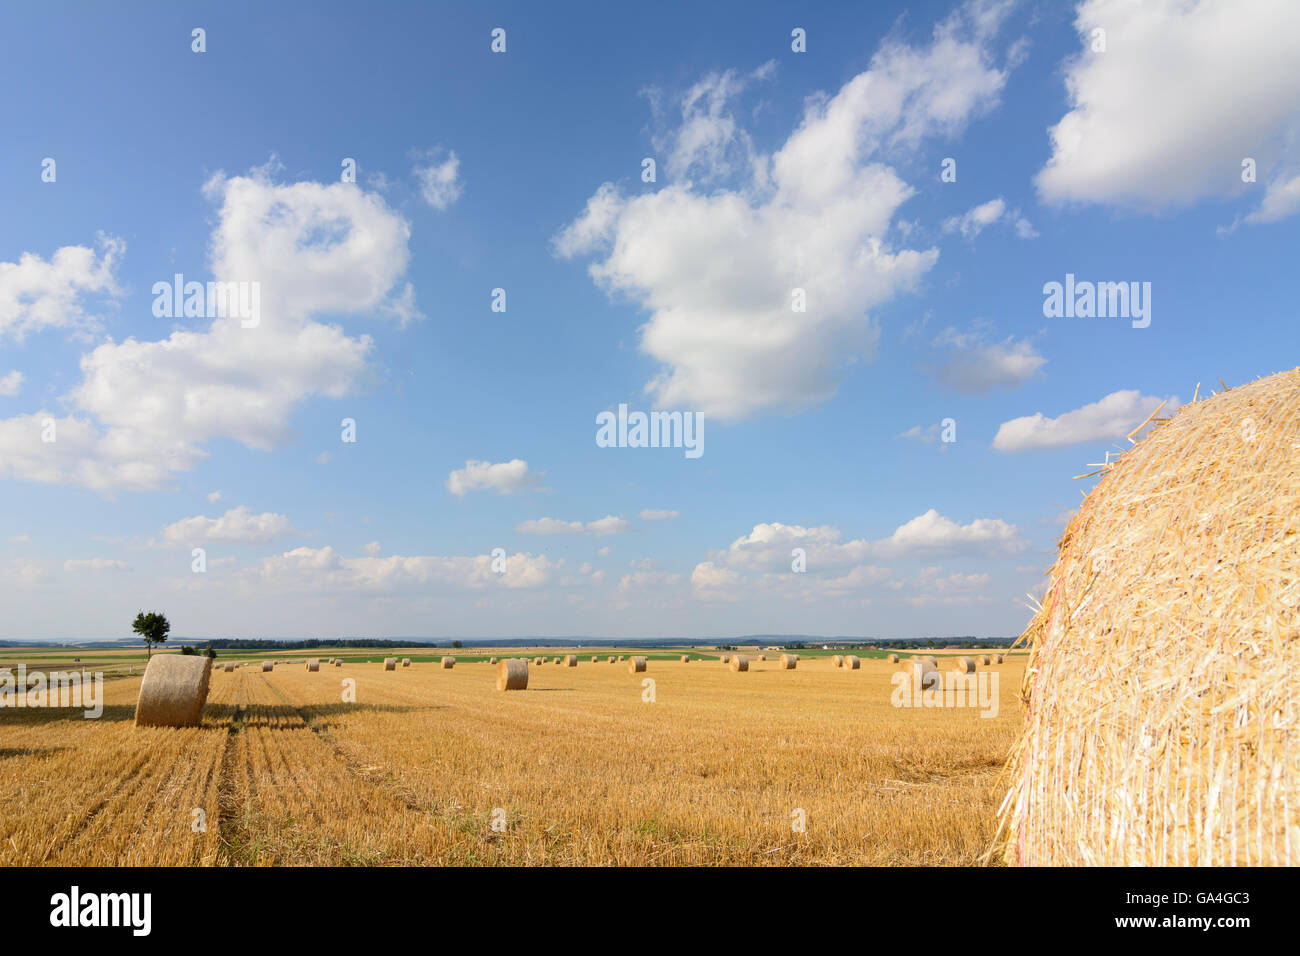 Les champs de céréales récoltées Geras avec des bottes de paille Autriche Niederösterreich, Autriche Basse-autriche Banque D'Images